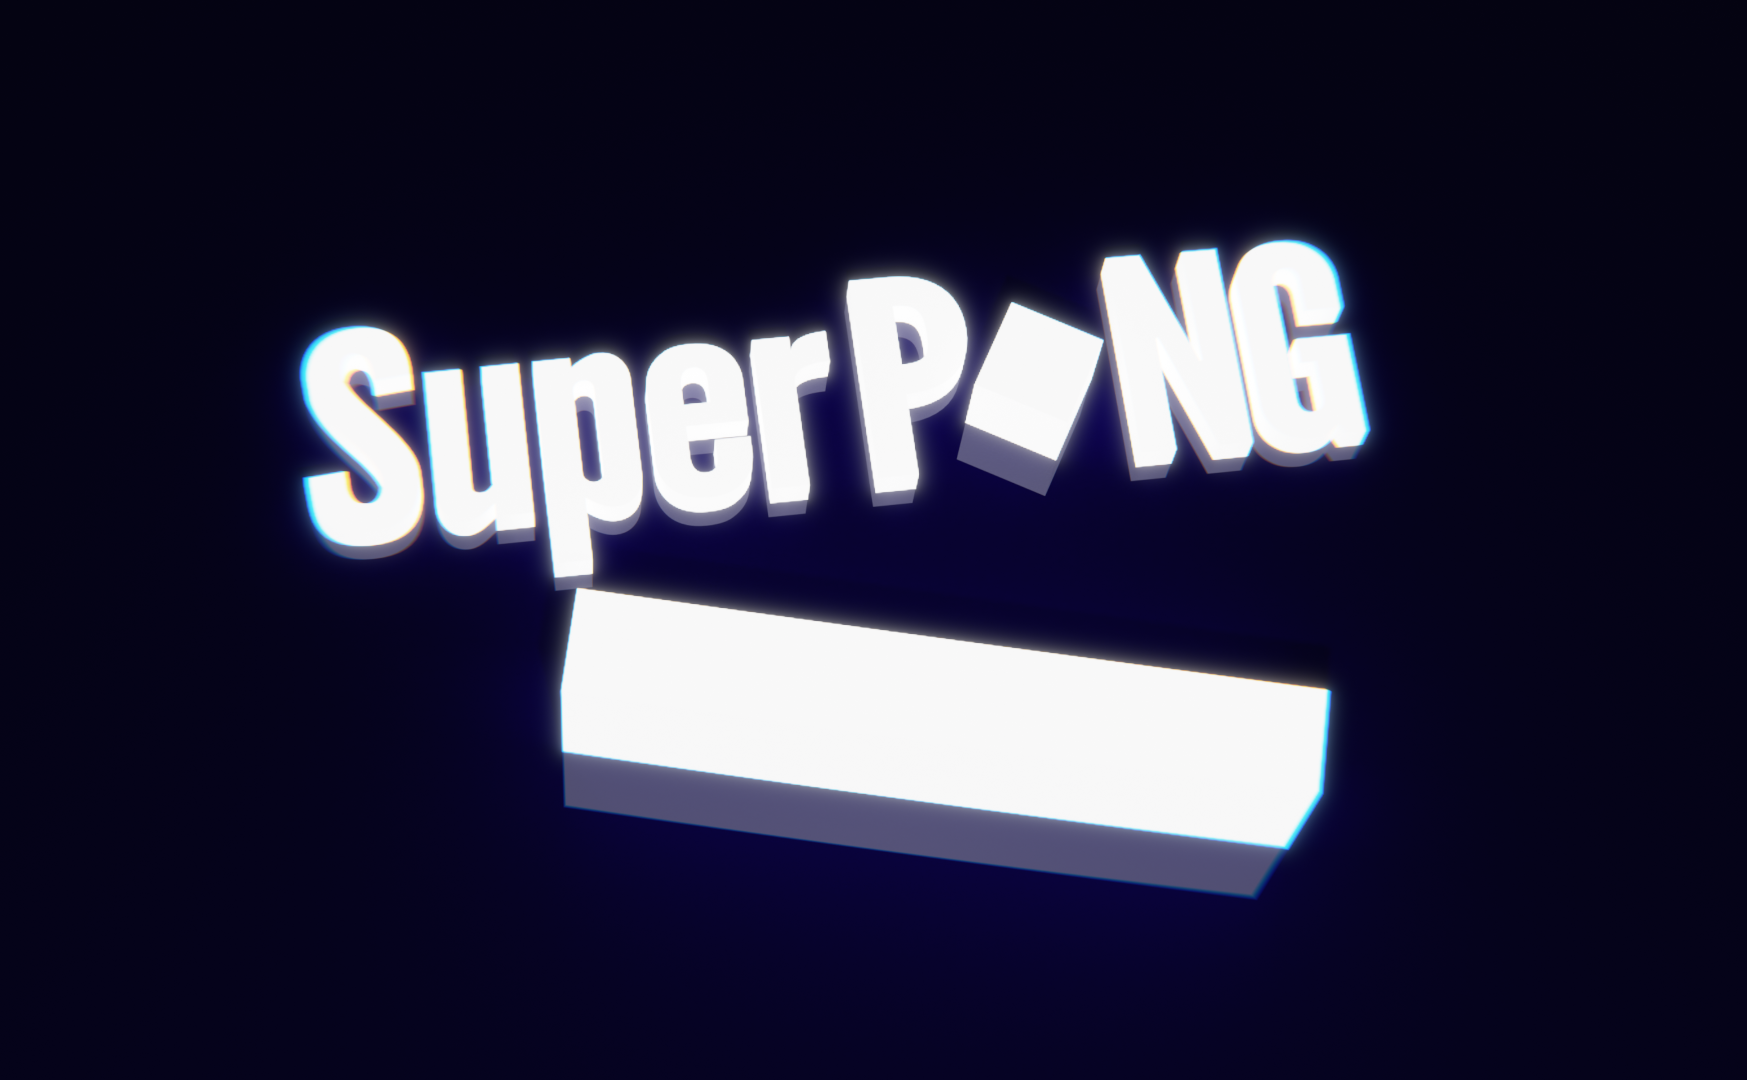 Super Pong